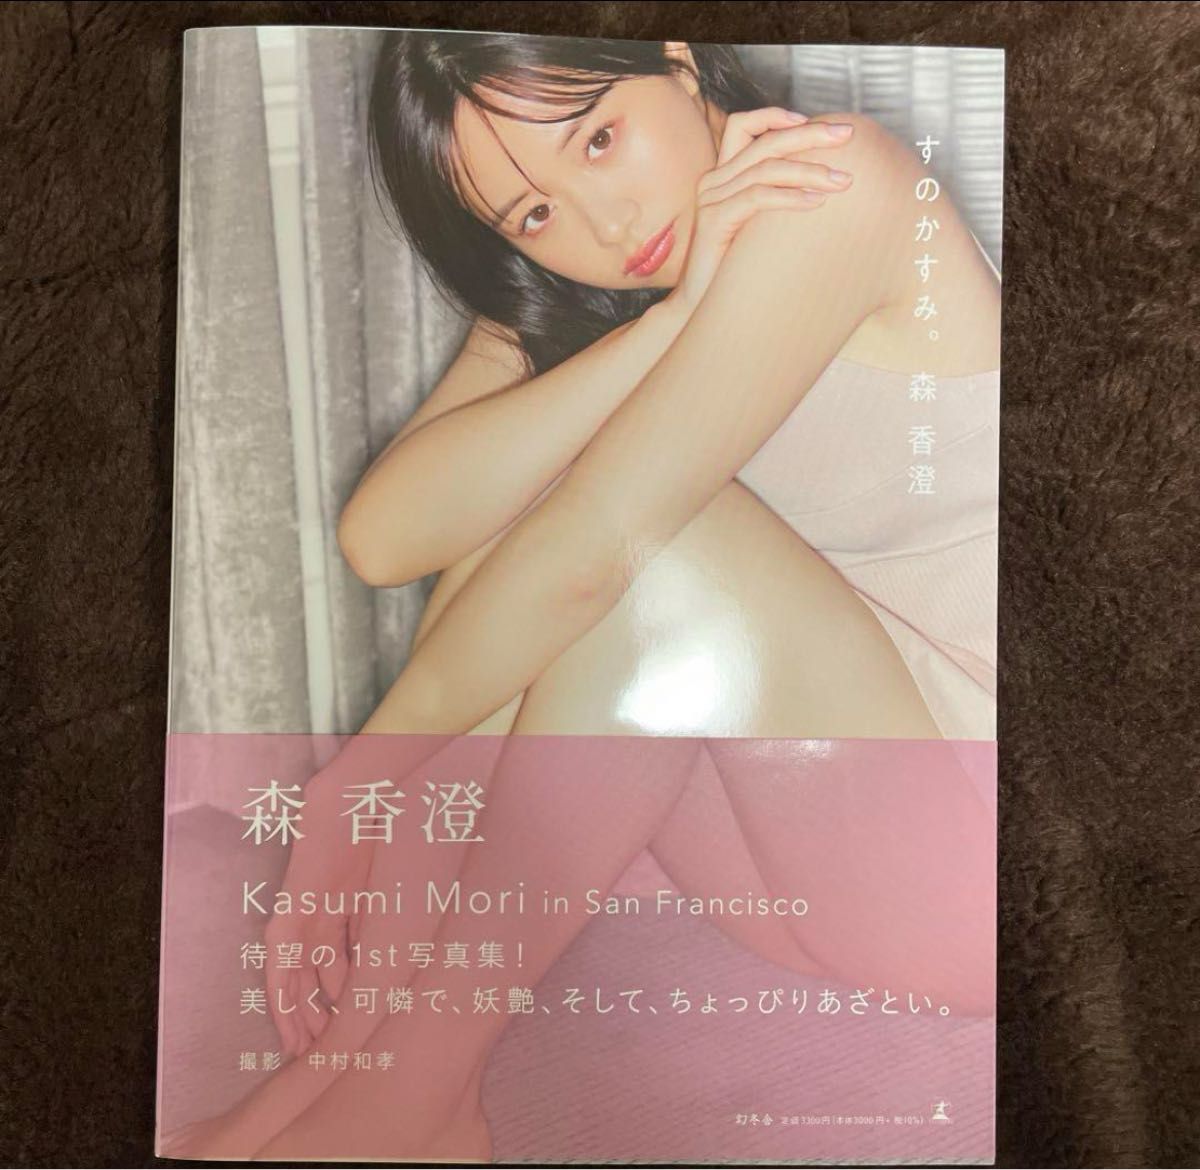 森香澄『すのかすみ』定価 ¥ 3,300新品未開封の商品です。HMV博多での写真集イベントのものです。